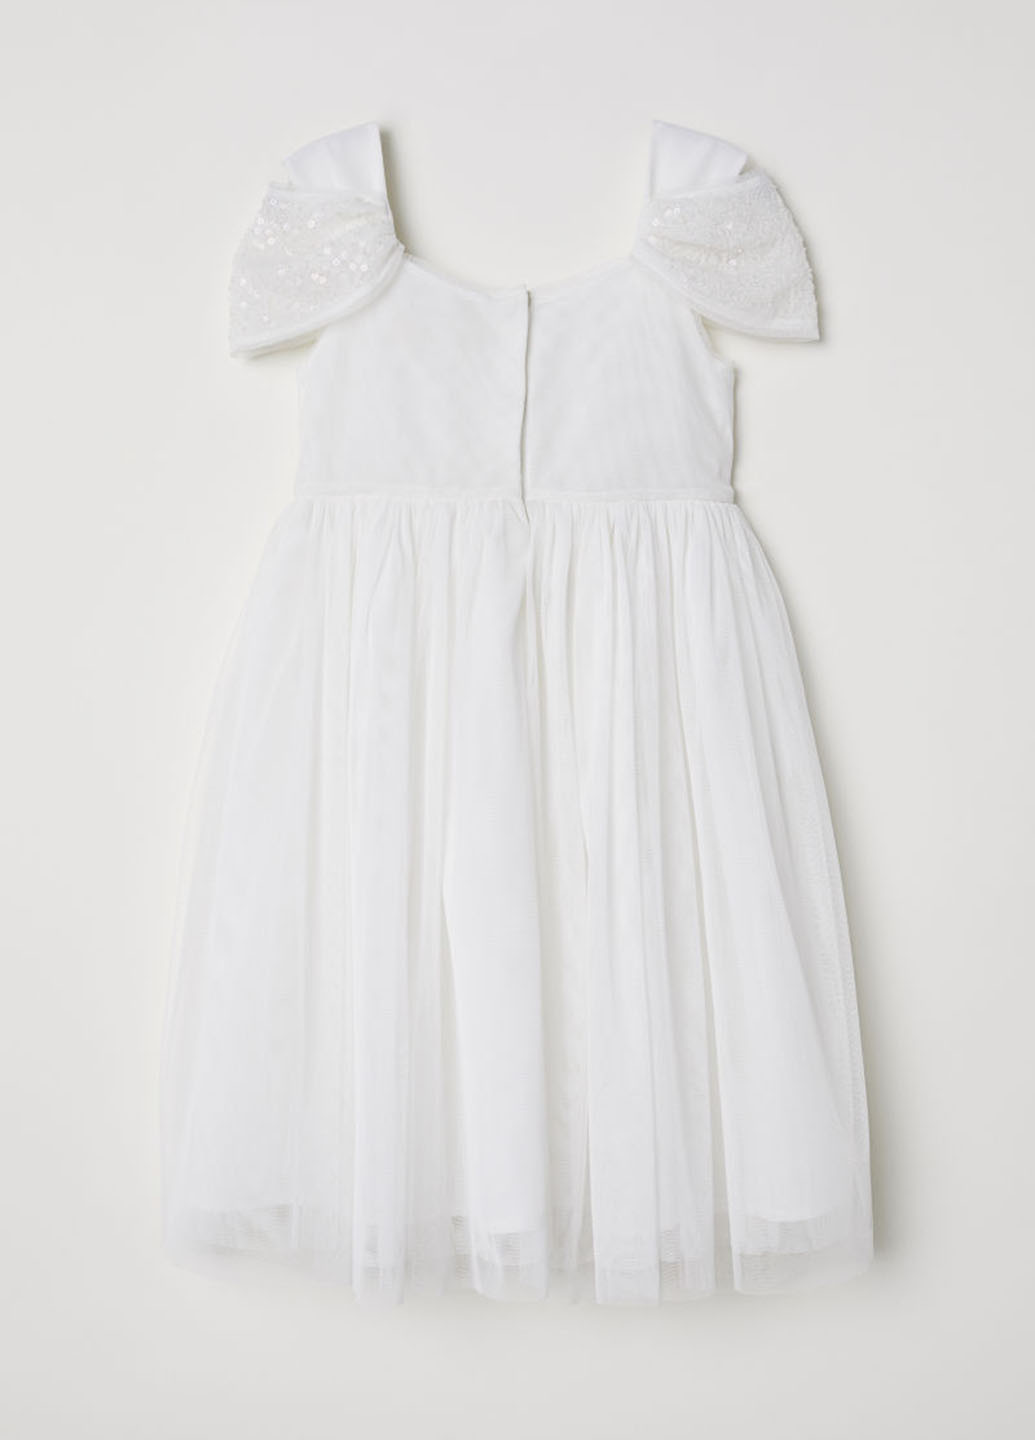 Белое праздничный платье с посадкой по талии H&M однотонное